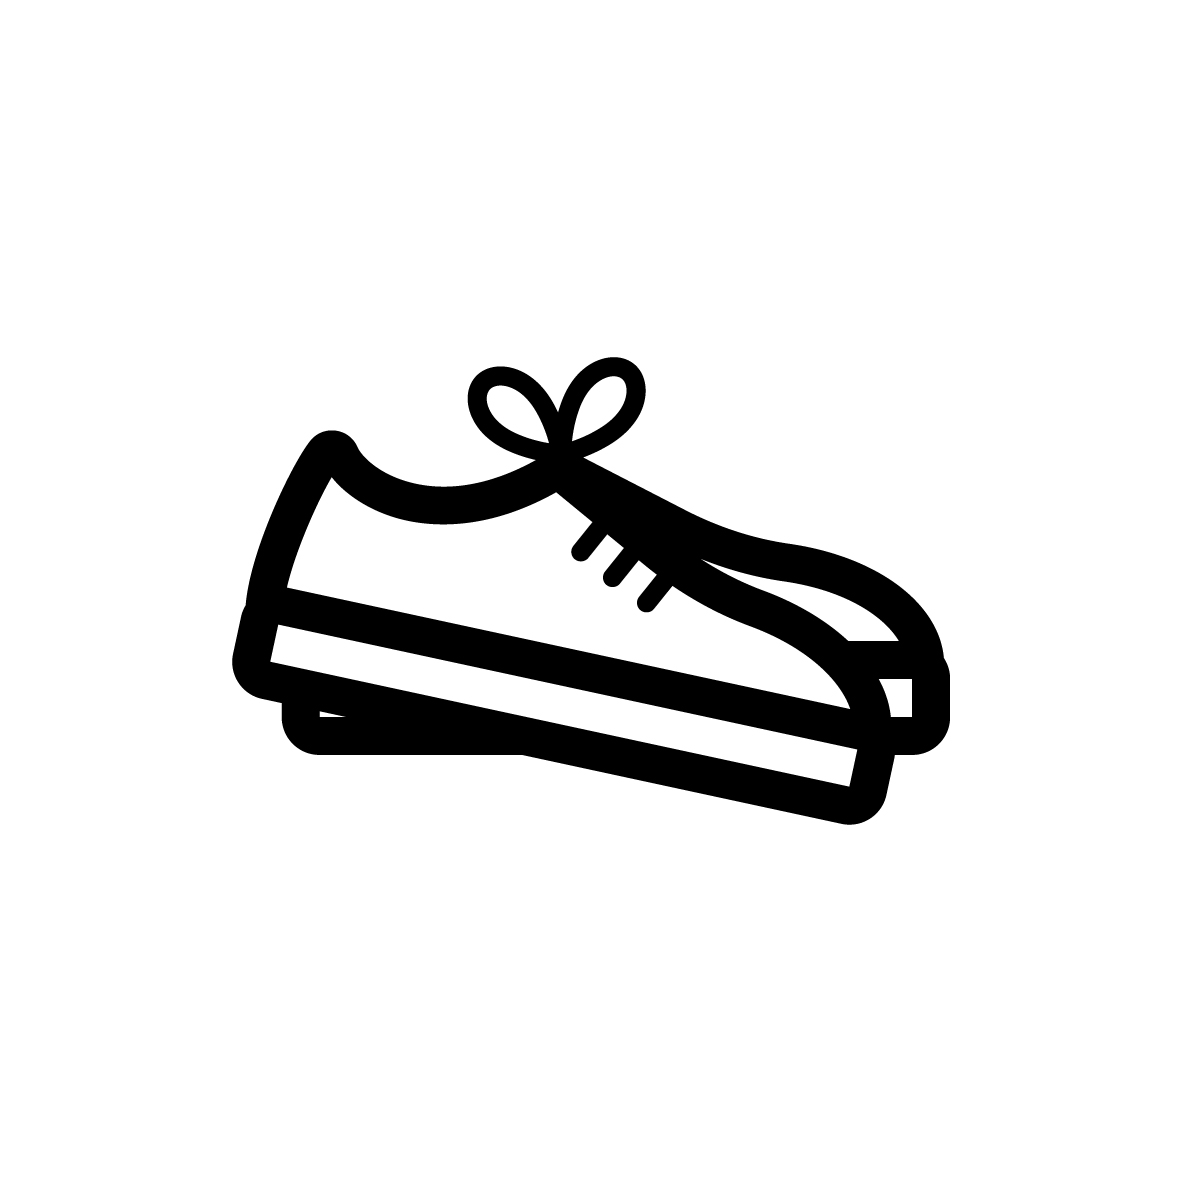 https://www.laval.fr/fileadmin/Phototheque_agglo/Dechets_-_doc___imgs/Textile__linge_de_maison_et_chaussures/picto-chaussures.jpg